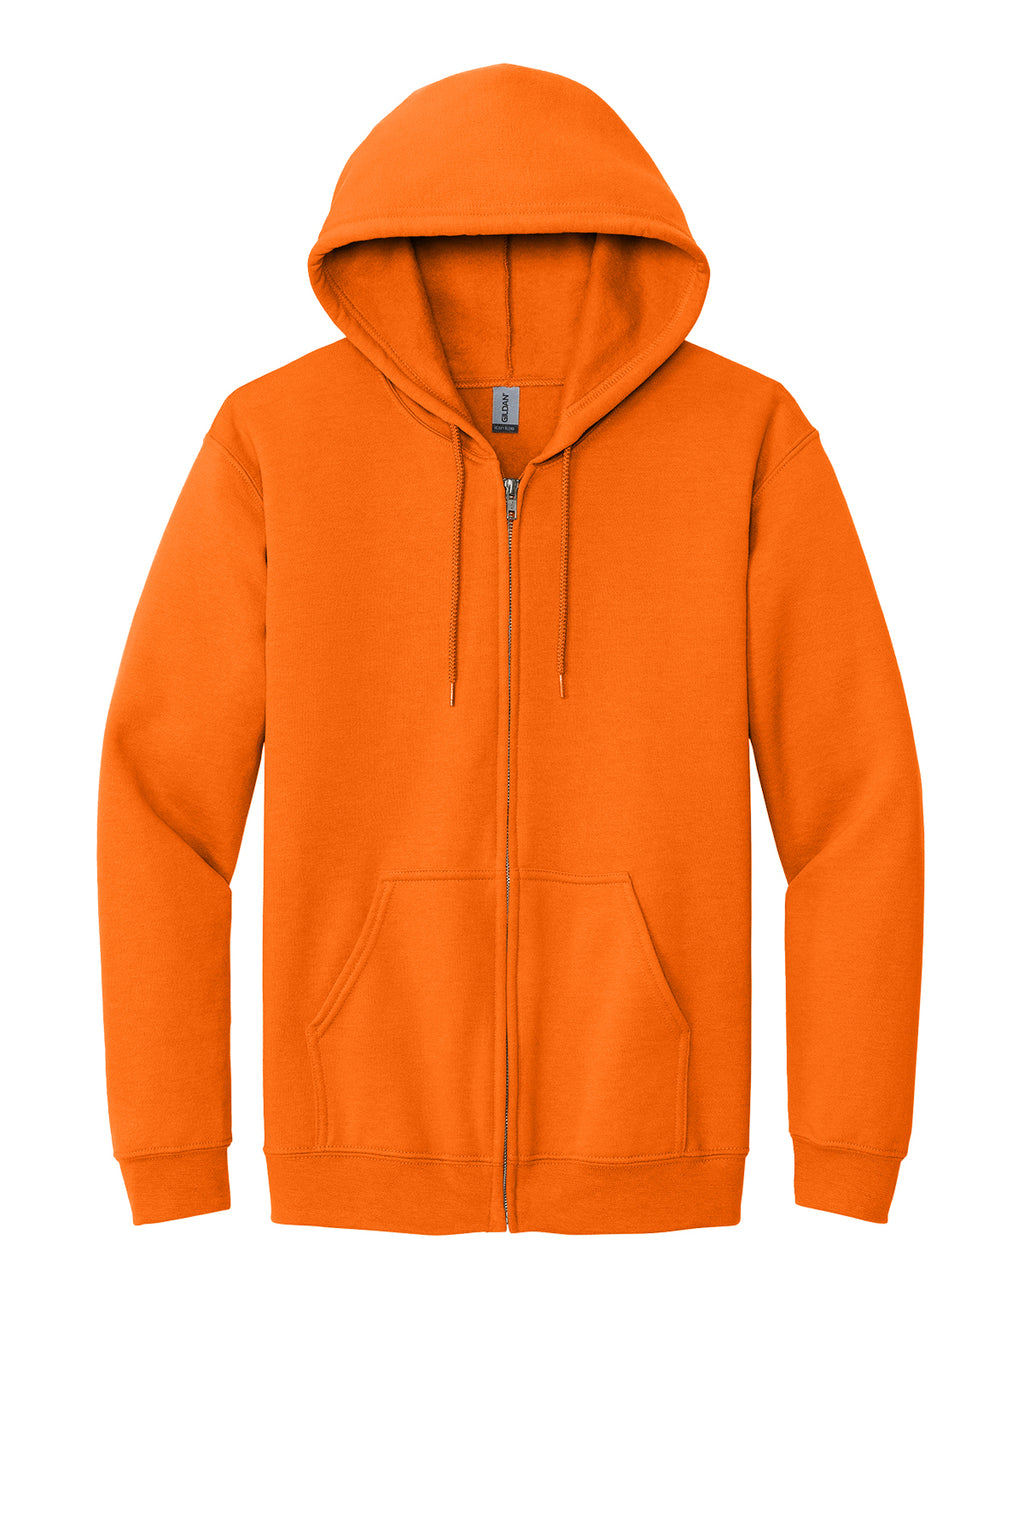 Gildan Full-Zip Hooded Sweatshirt Mens/Unisex Hoodies Safety Orange